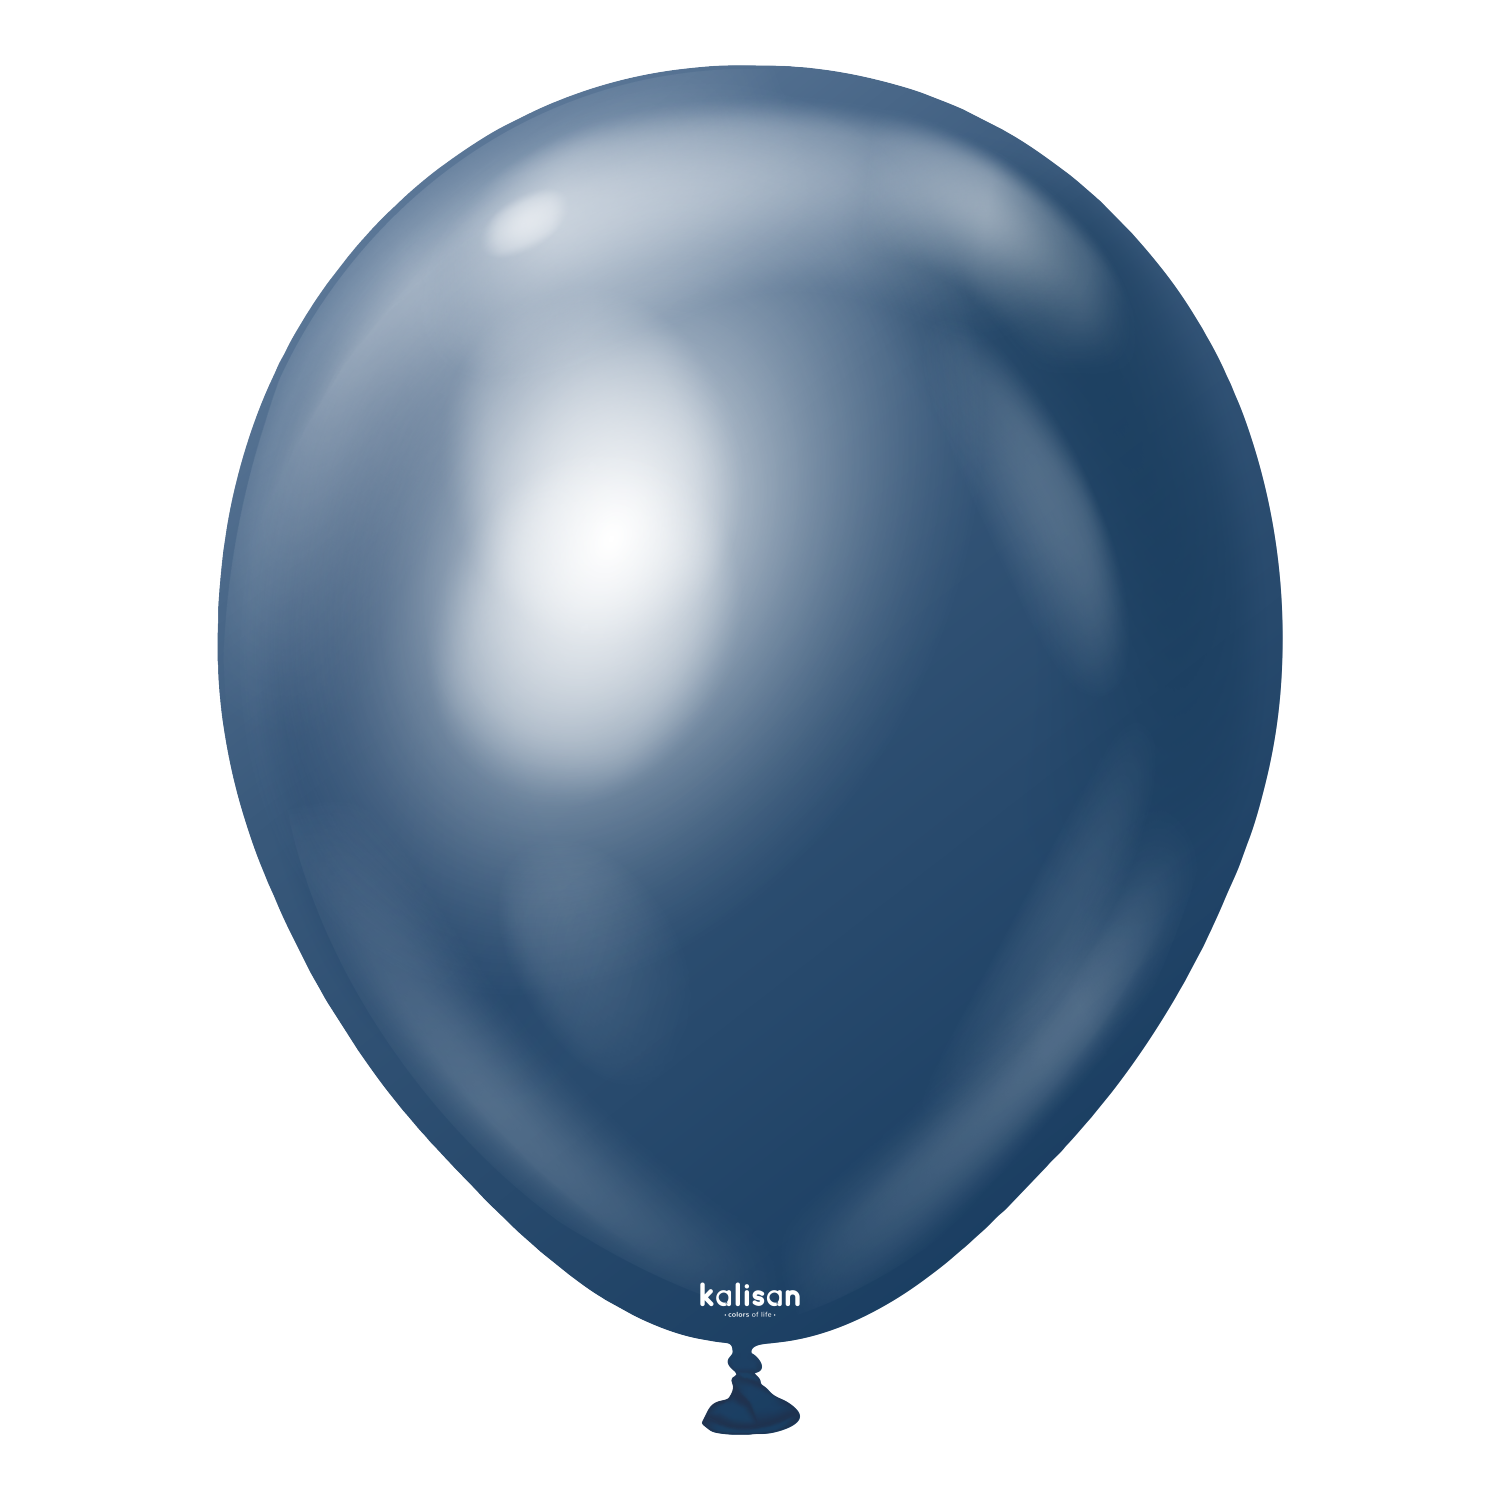 Kalisan Mirror Balloons